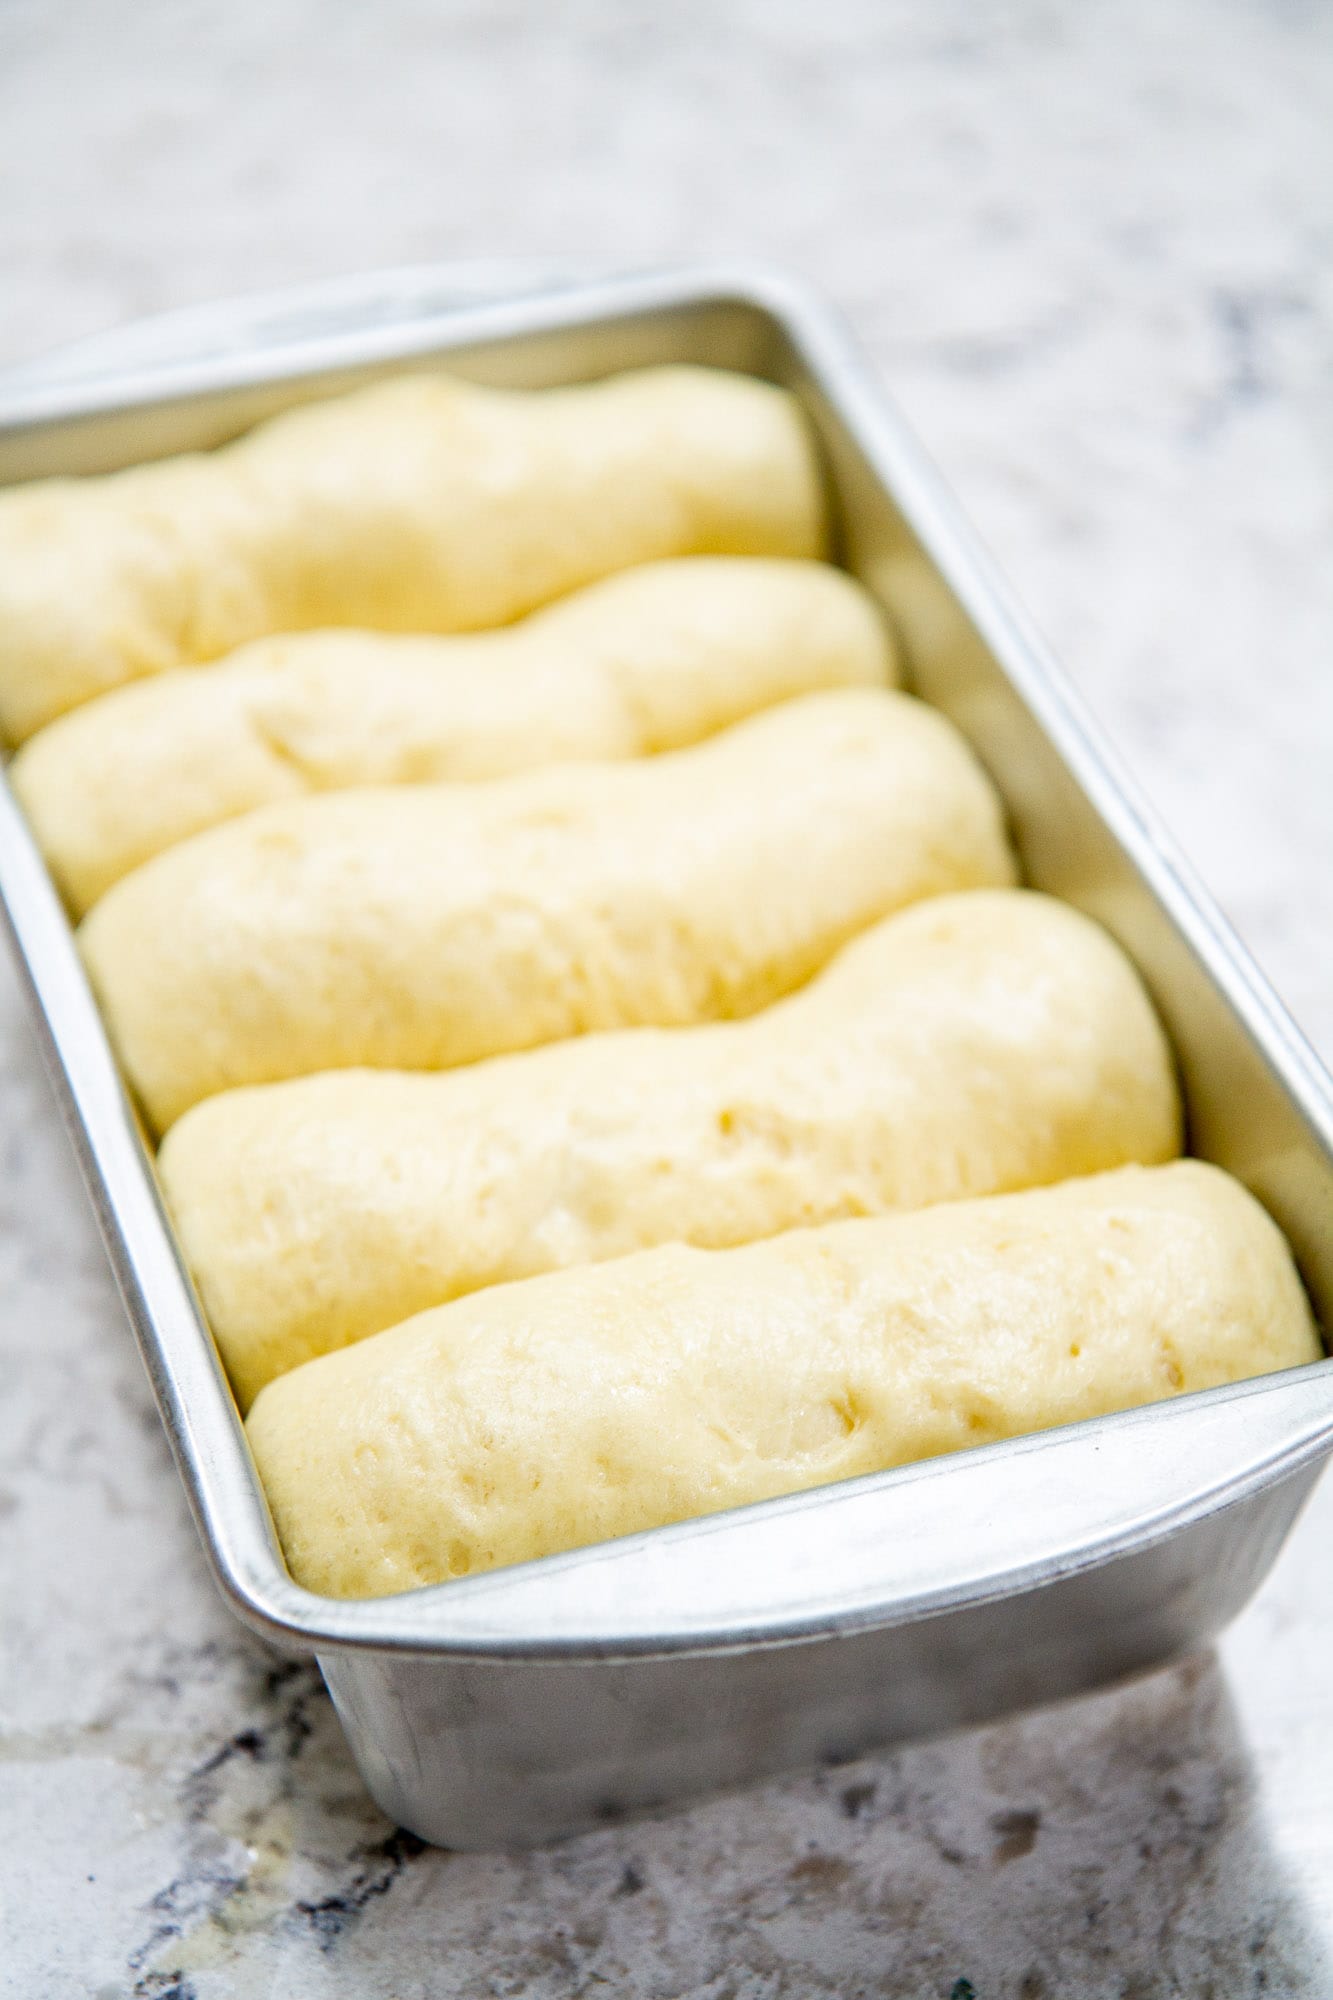 risen classic brioche loaf bread in baking pan